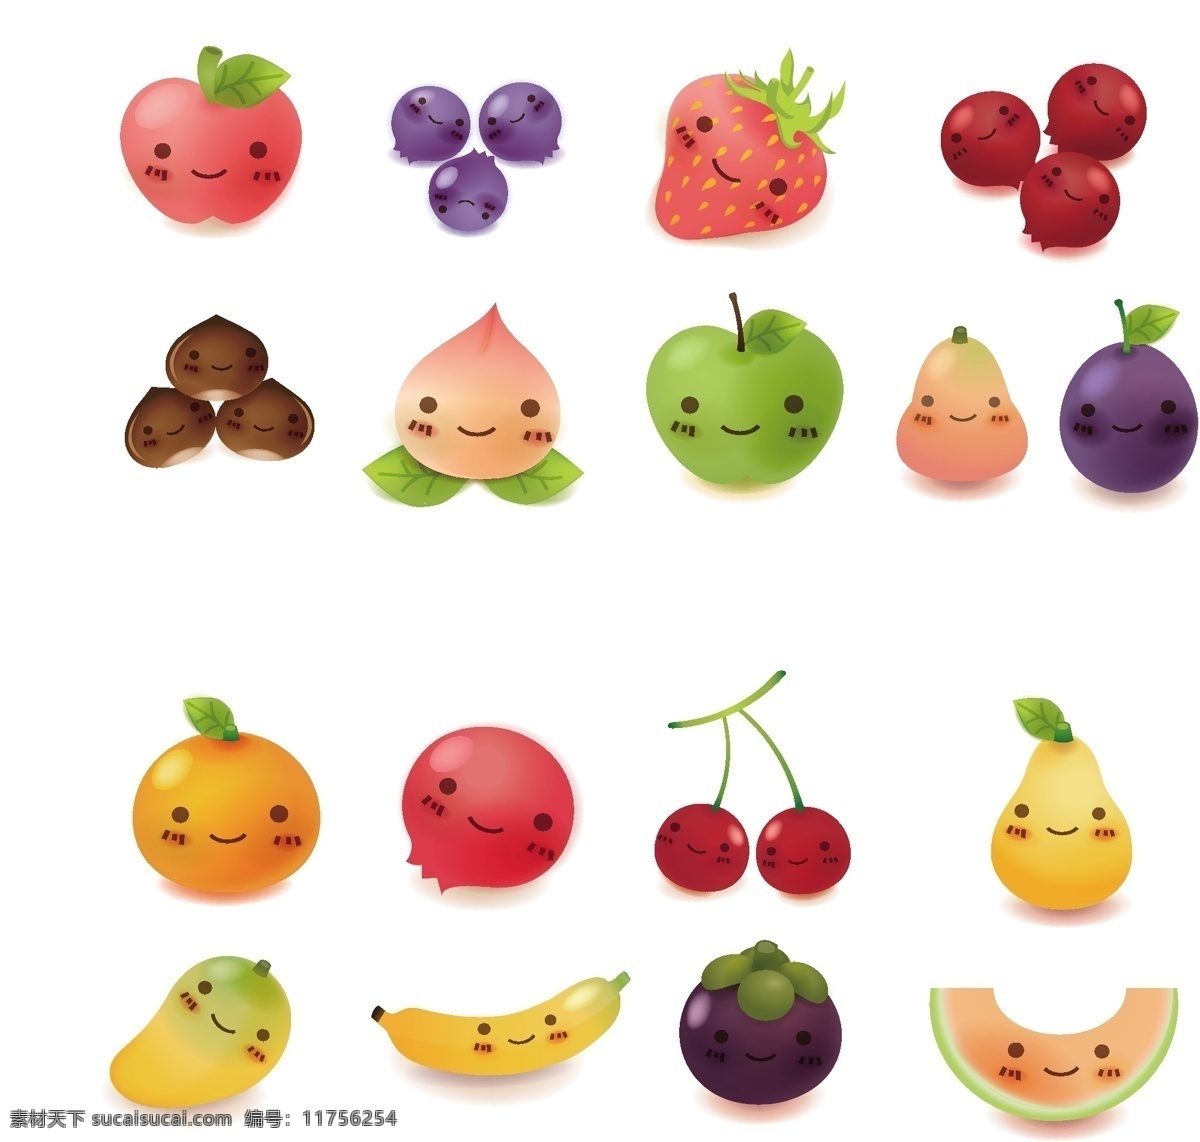 水果卡通素材 矢量水果素材 苹果素材 苹果 新鲜 梨 桔子 卡通设计